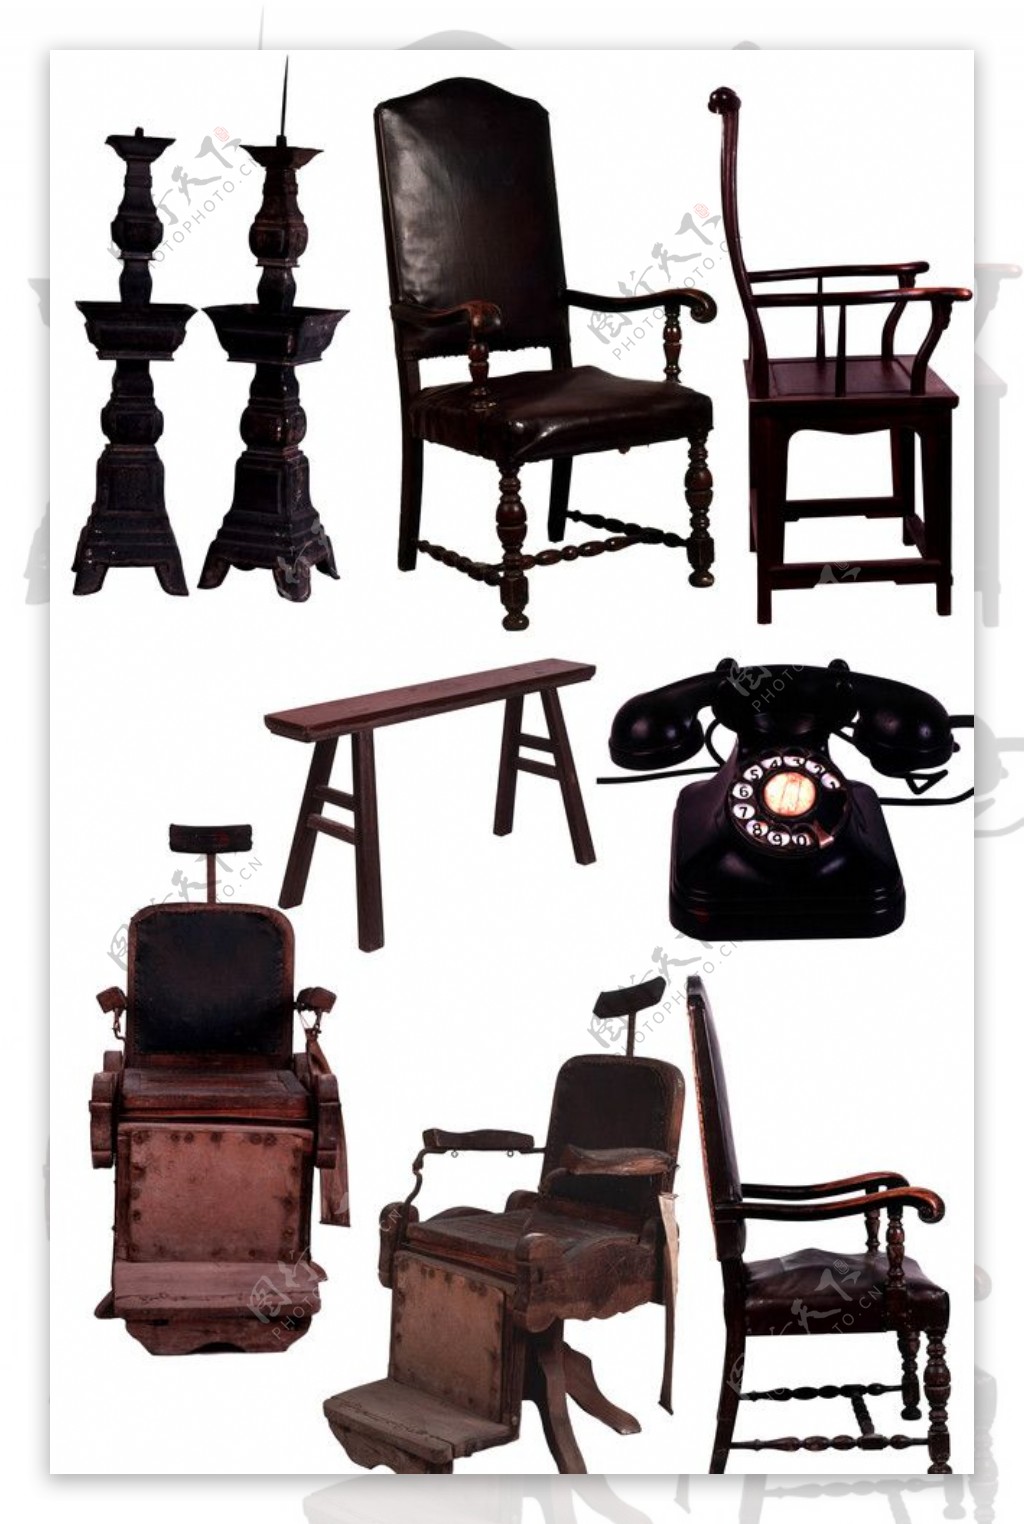 方凳靠椅欧式靠椅摇篮80年代化妆盒茶具陶瓷台灯古代币仿古家具图片